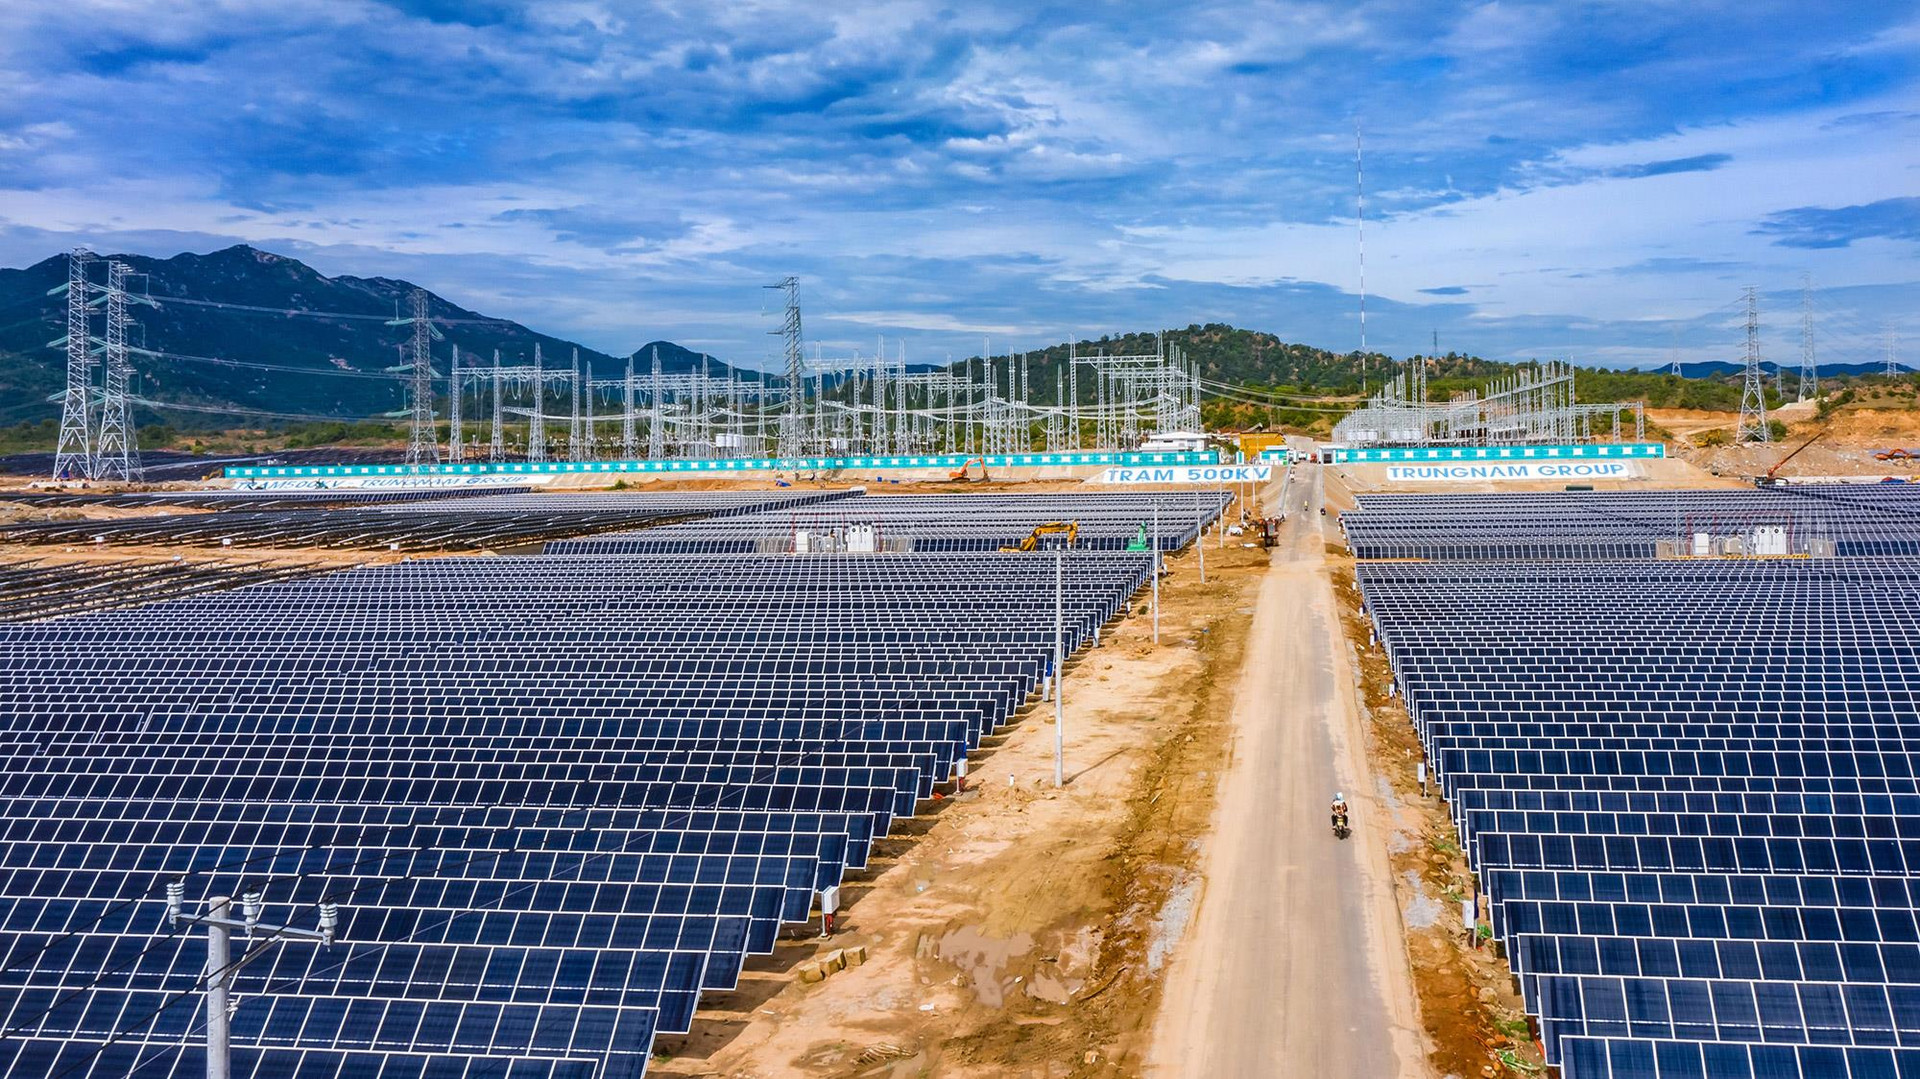 Danh sách 15 dự án điện tái tạo được Bộ Công thương phê duyệt giá tạm: Trung Nam - Thuận Nam 450MW, Hanbaram...